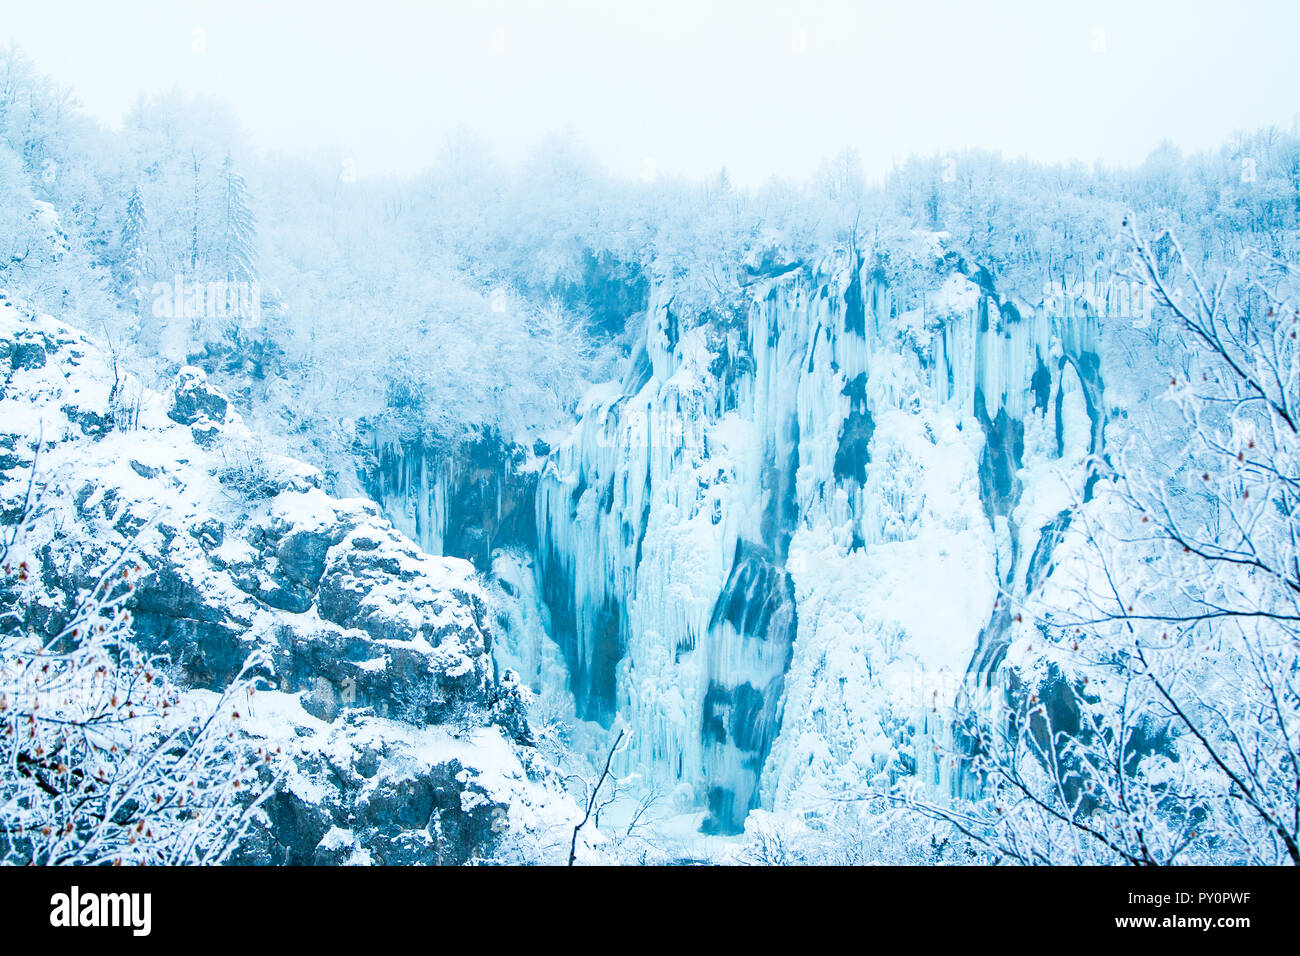 La Croatie, de Plitivice, de grandes chutes d', gelés en hiver dans le parc nature populaires Plitvicka jezera, look fée nature paysage Banque D'Images